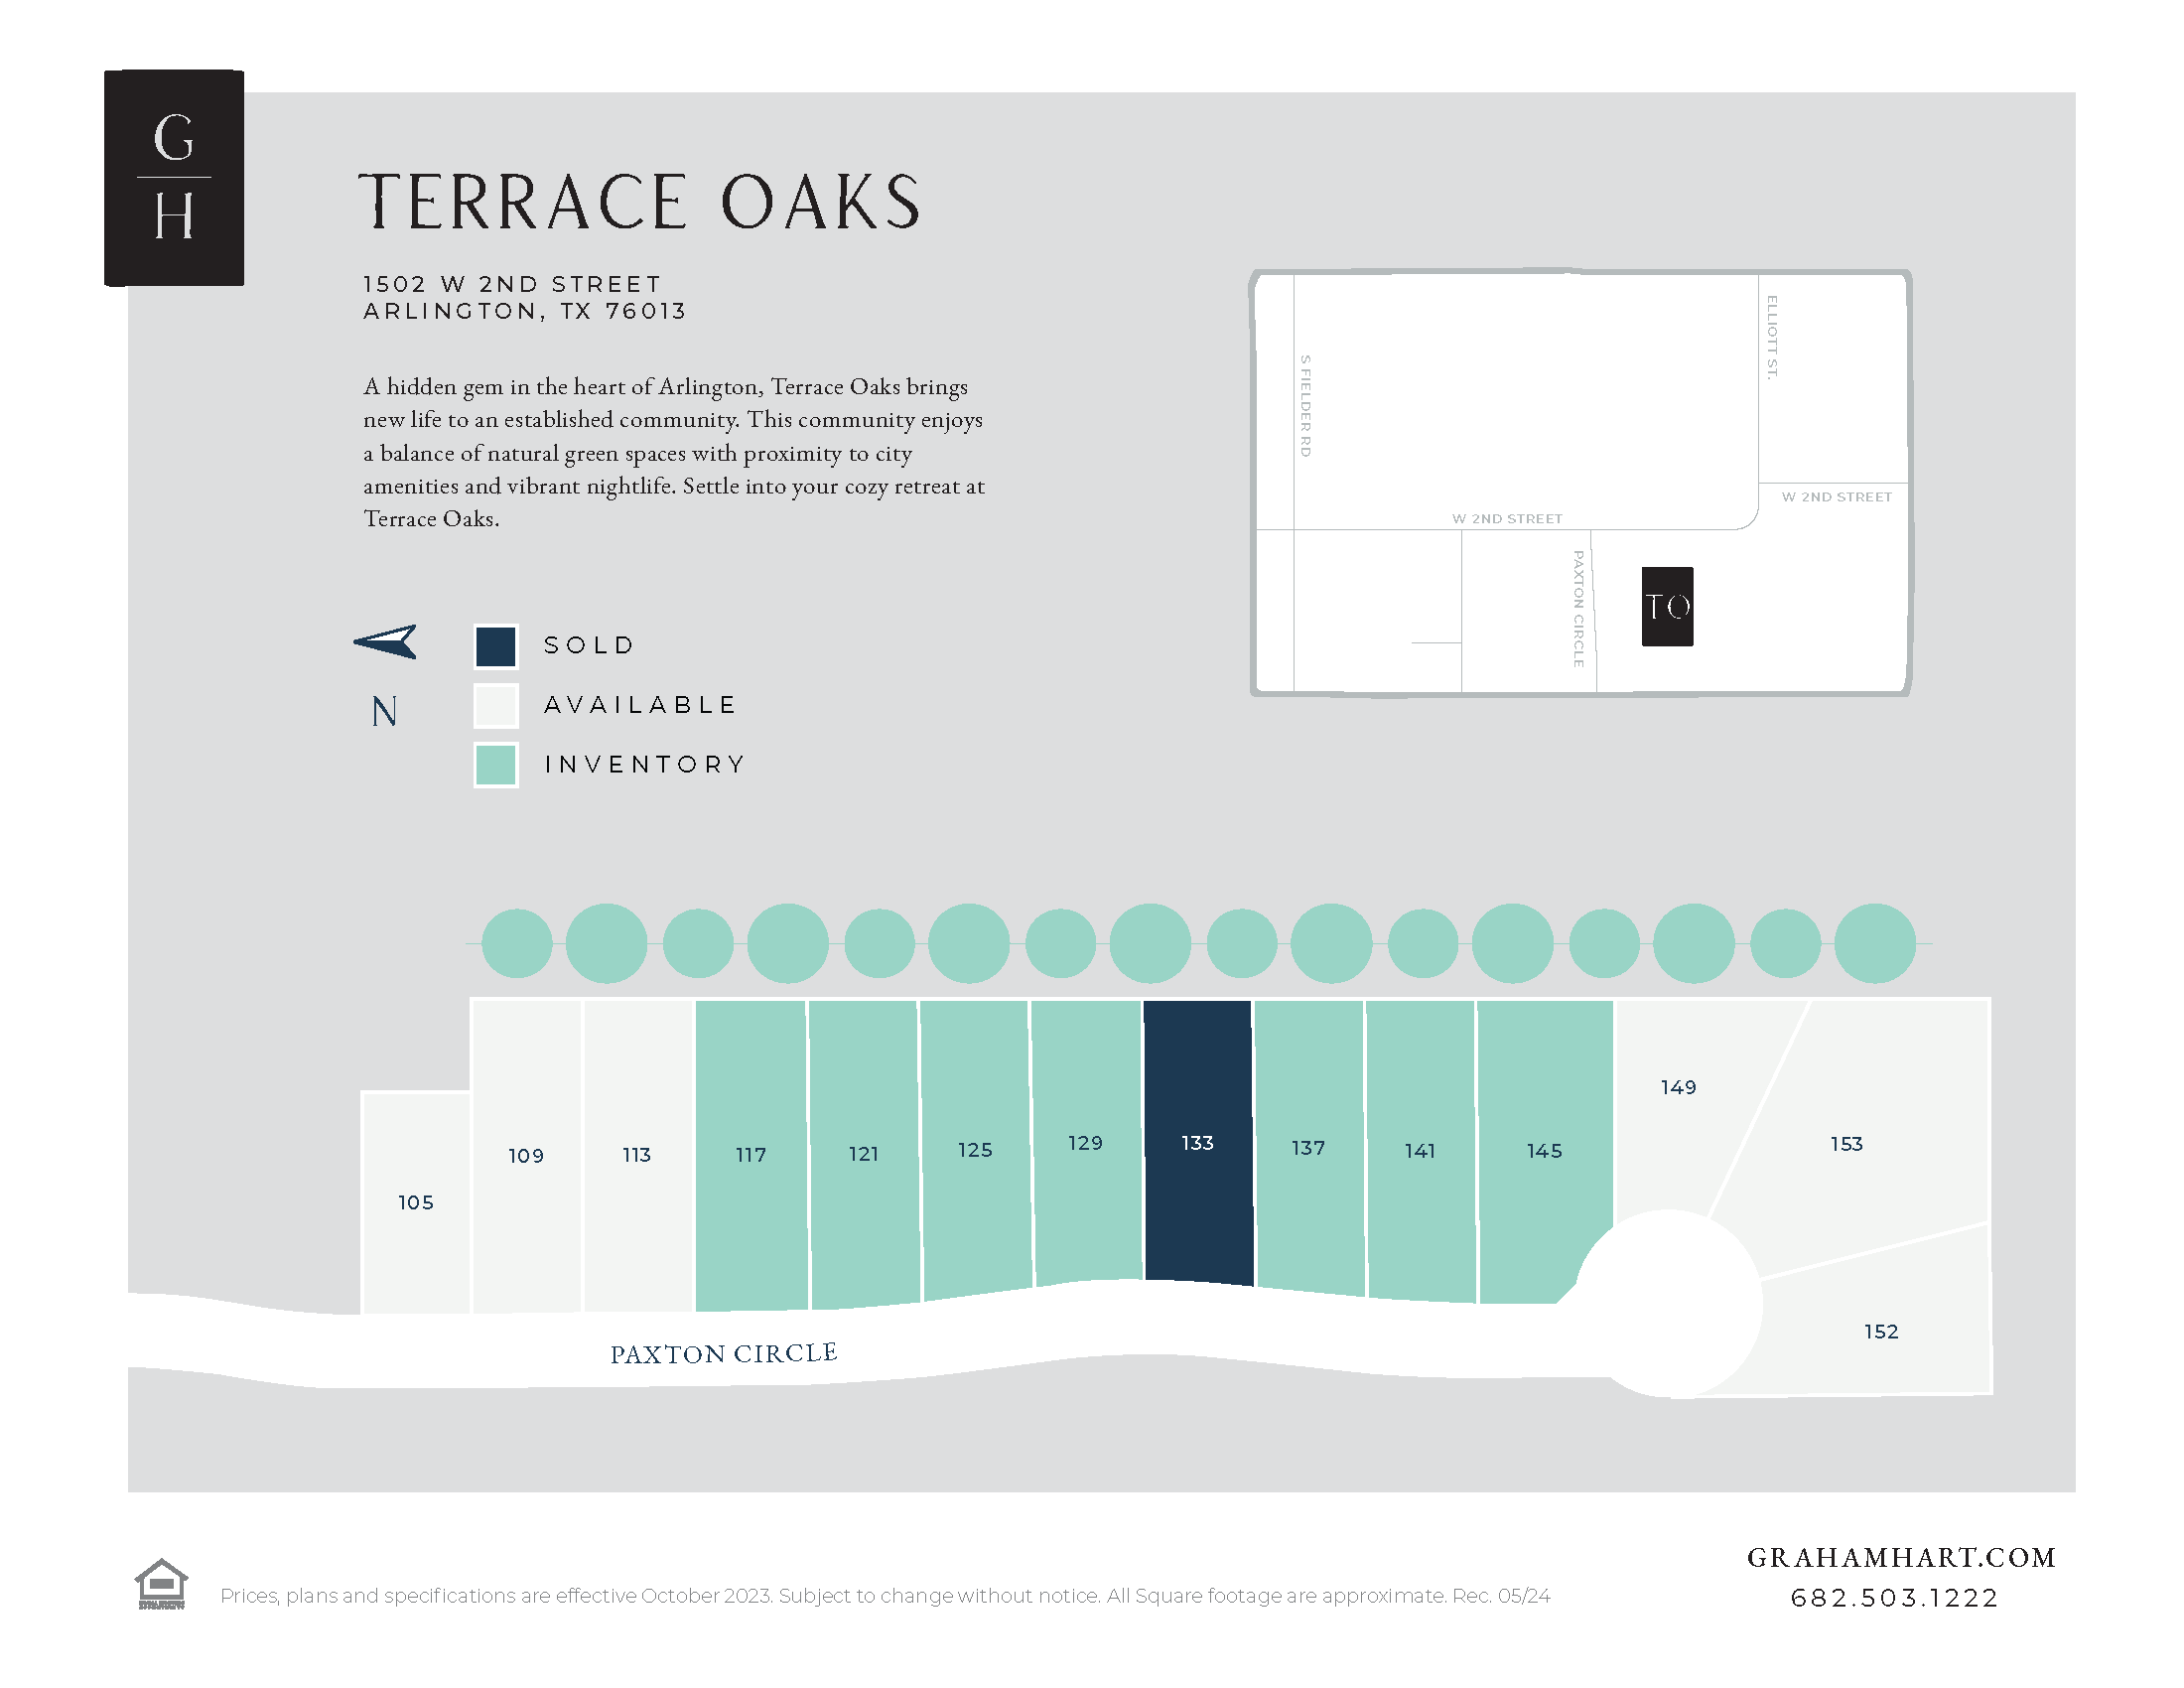 Terrace Oaks community plat map